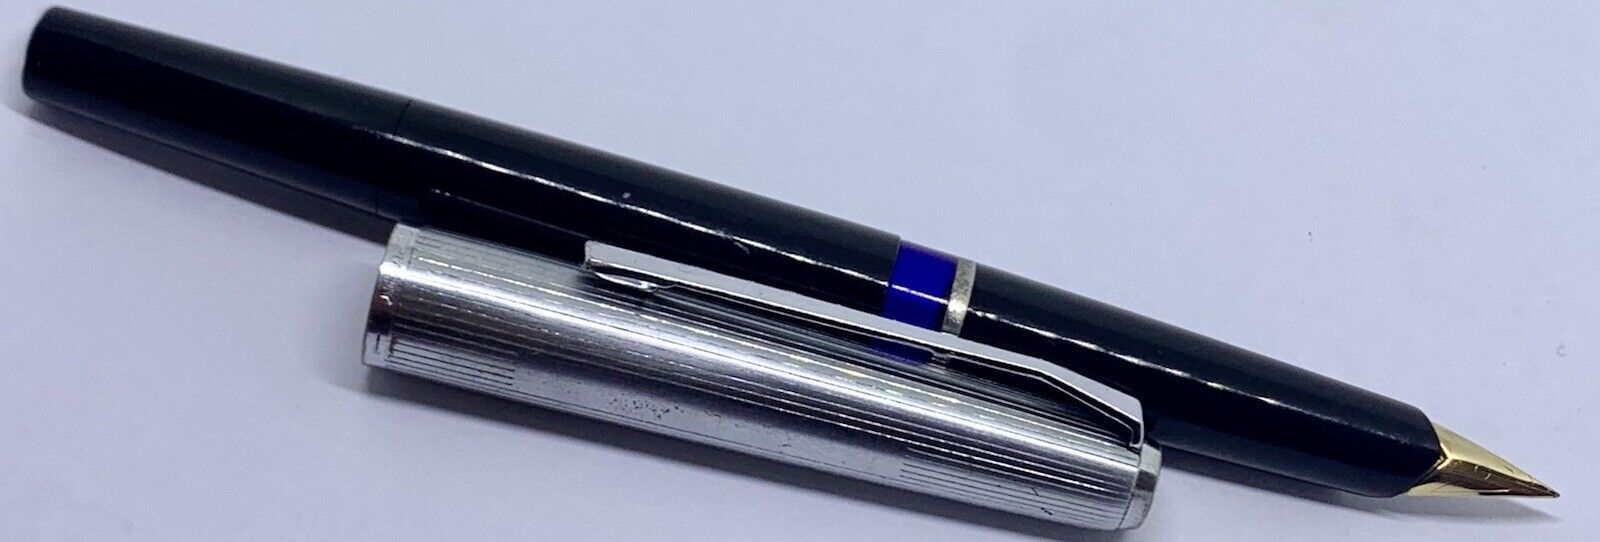 Vintage Serviced PELIKAN 20 Silvexa Fountain Pen -14k Extra Fine Nib- Germany